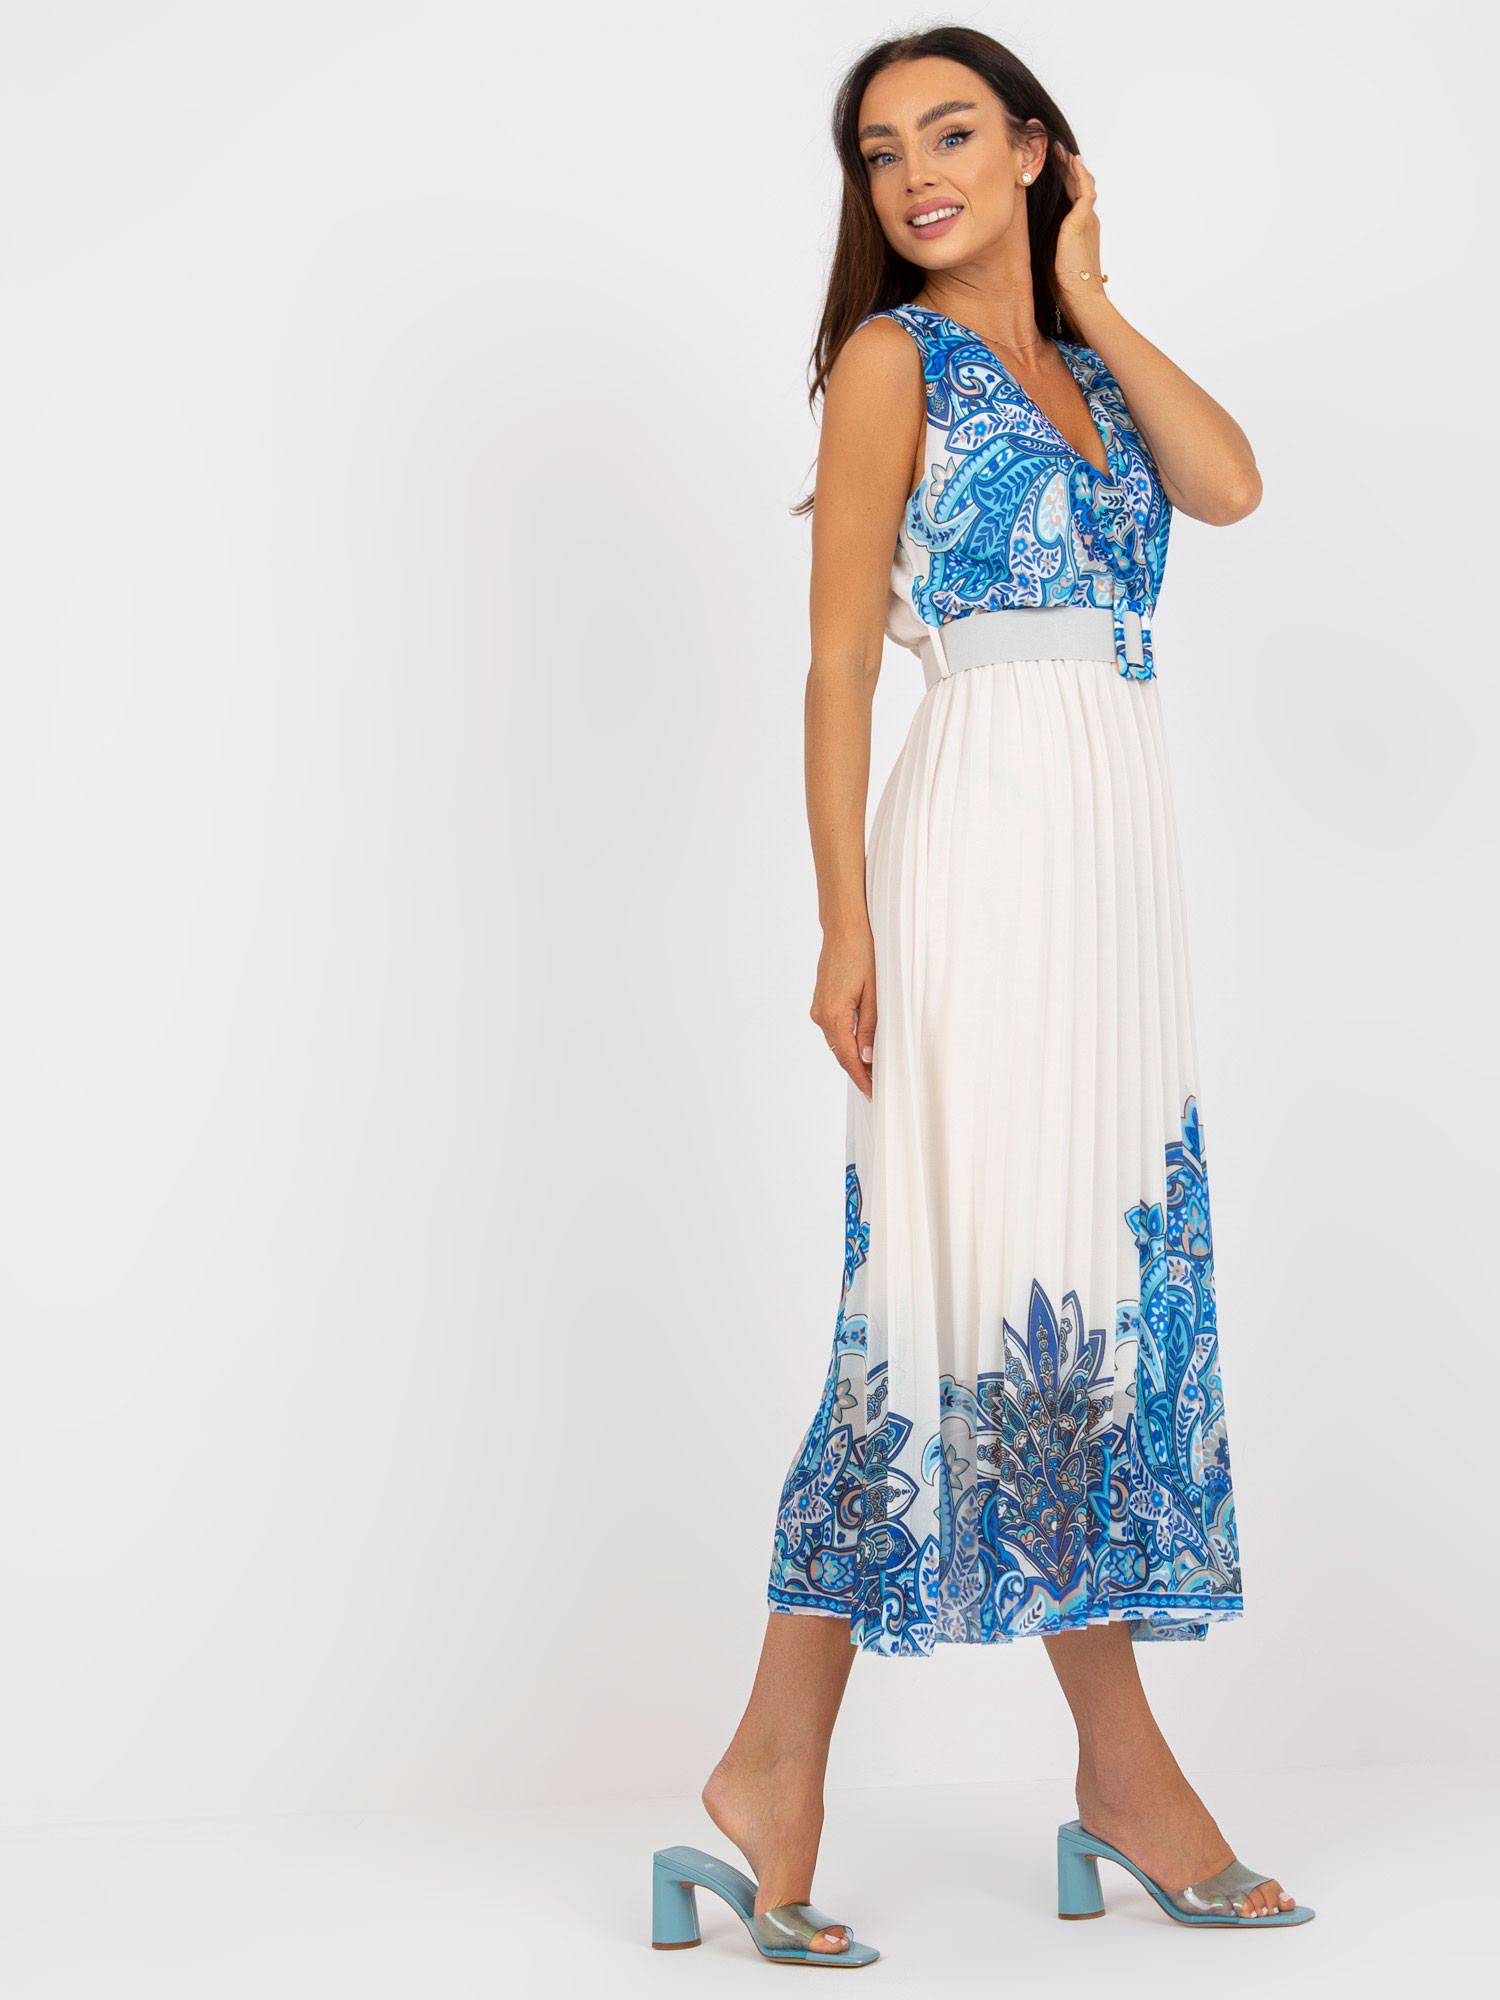 Dámské šaty DHJ SK 13128 bílé a modré - FPrice UNI